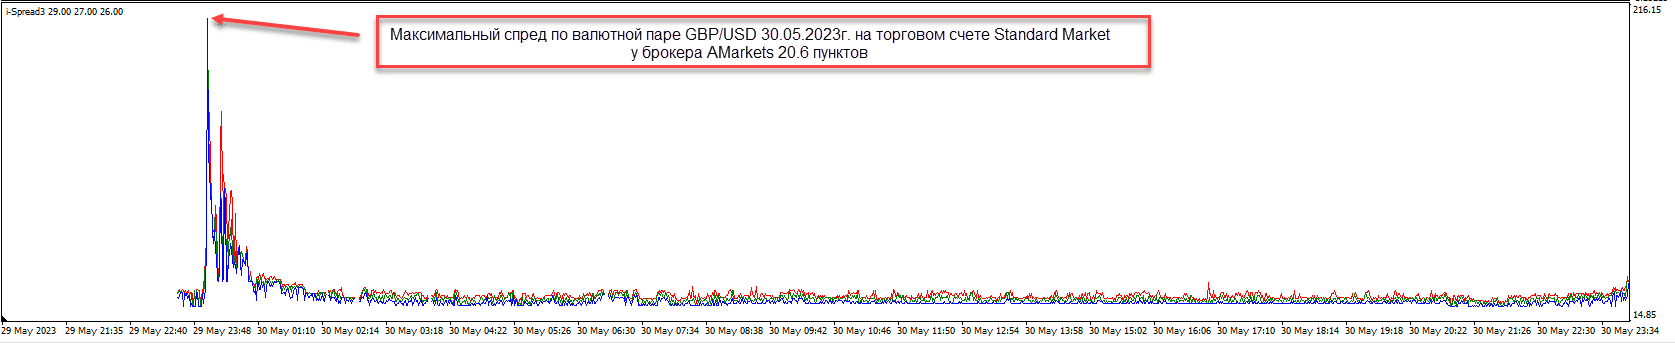 график изменения спреда GBP/USD